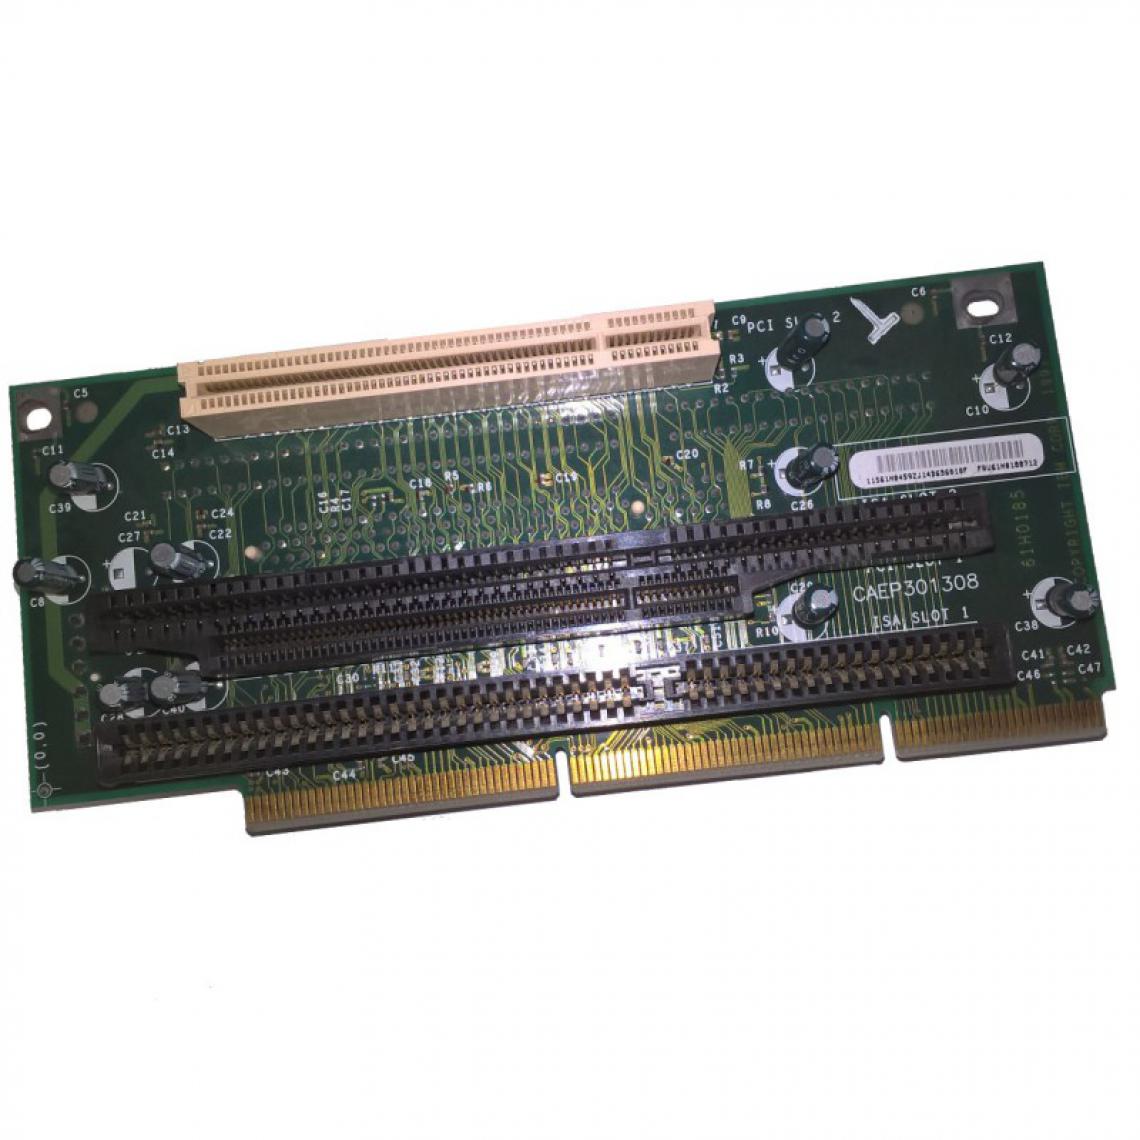 Ibm - Carte 3x PCI 3x ISA Riser Card IBM CAEP301308 FRU 61H0188 61H0185 - Carte Contrôleur USB